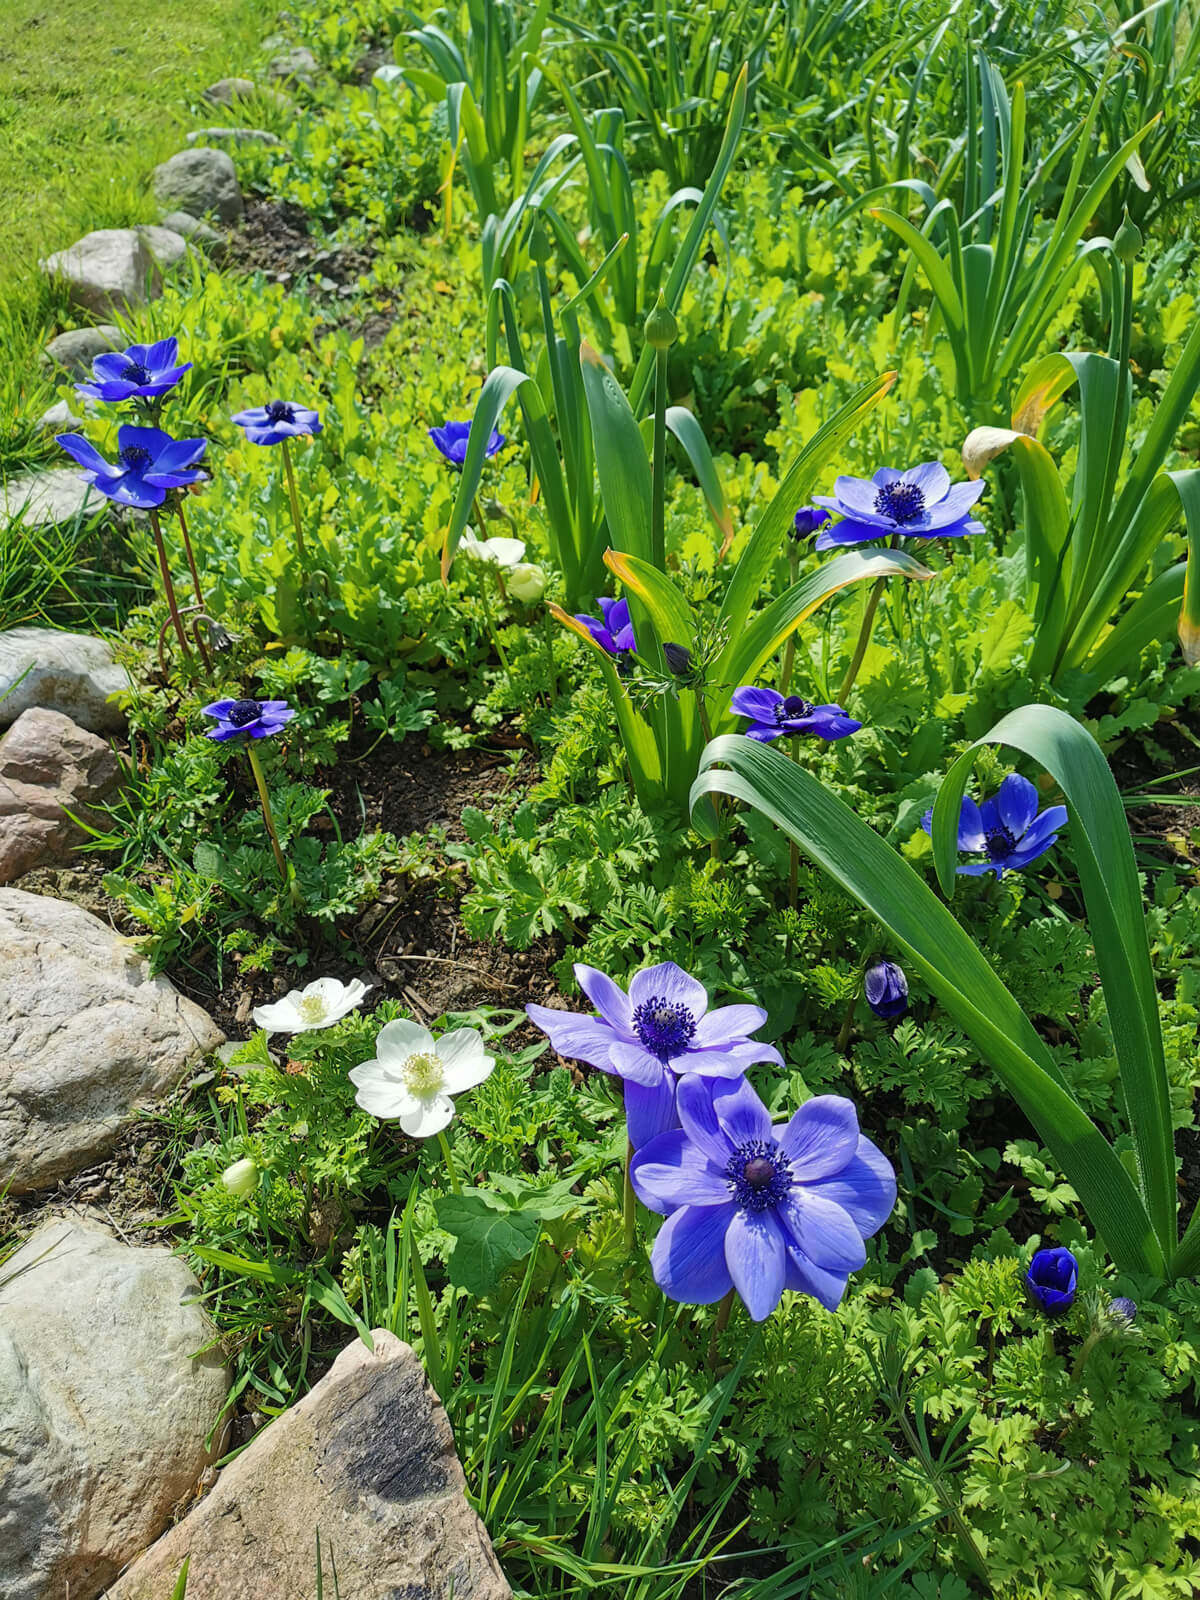 Blaue Blumen im grünen Gras